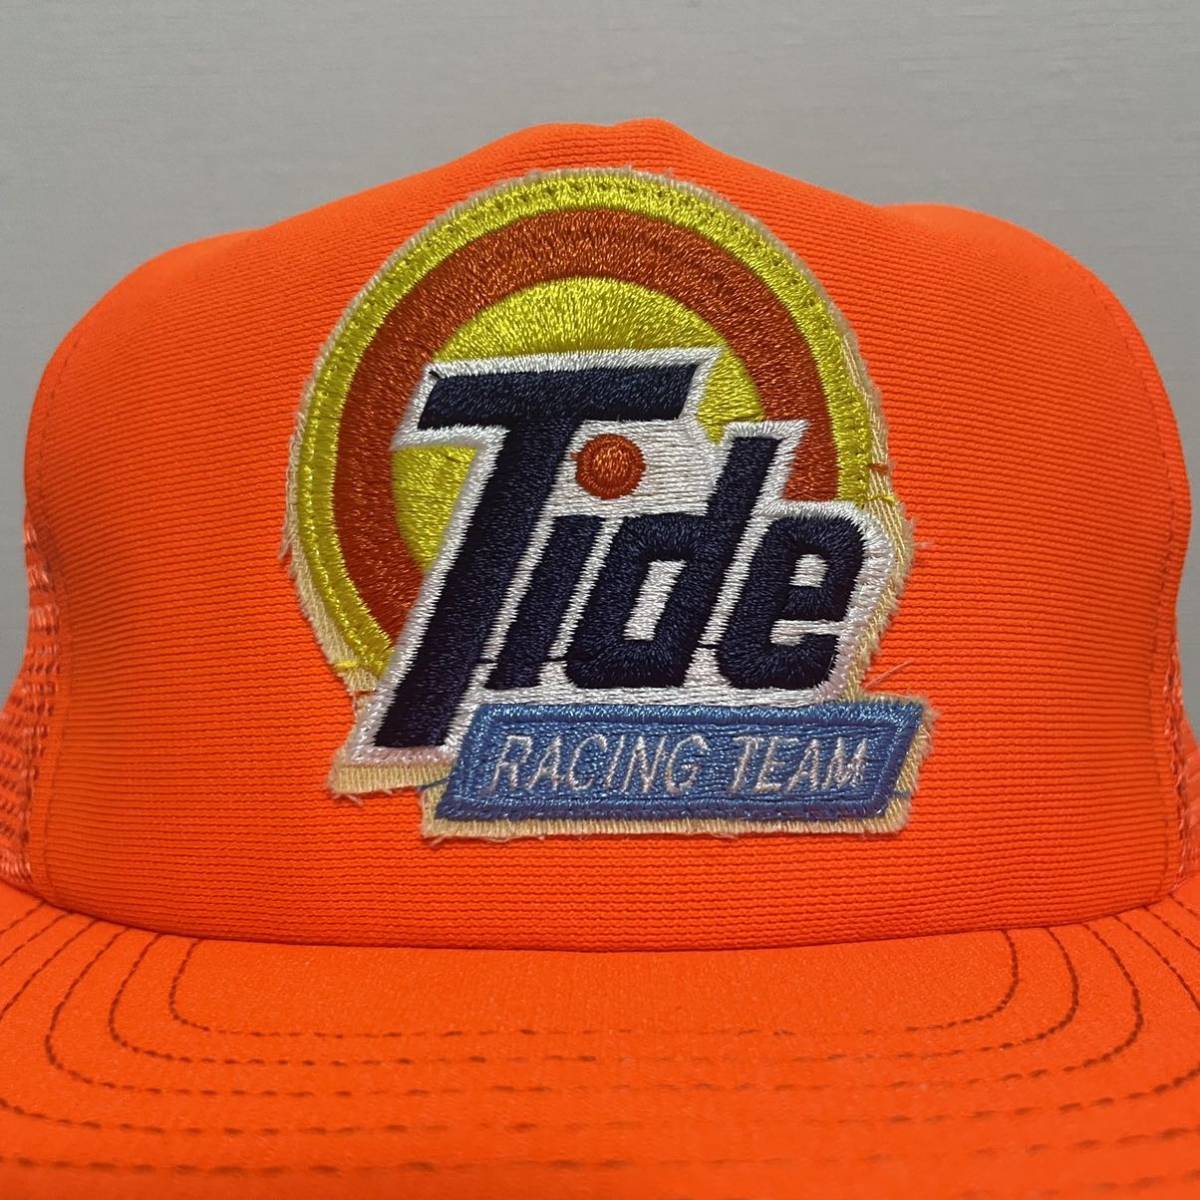 デッドストック TIDE トラッカーキャップ キャップ USA製 企業系 古着 メッシュキャップ 帽子 洗剤 アメリカ NASCAR ナスカー ビンテージ_画像3